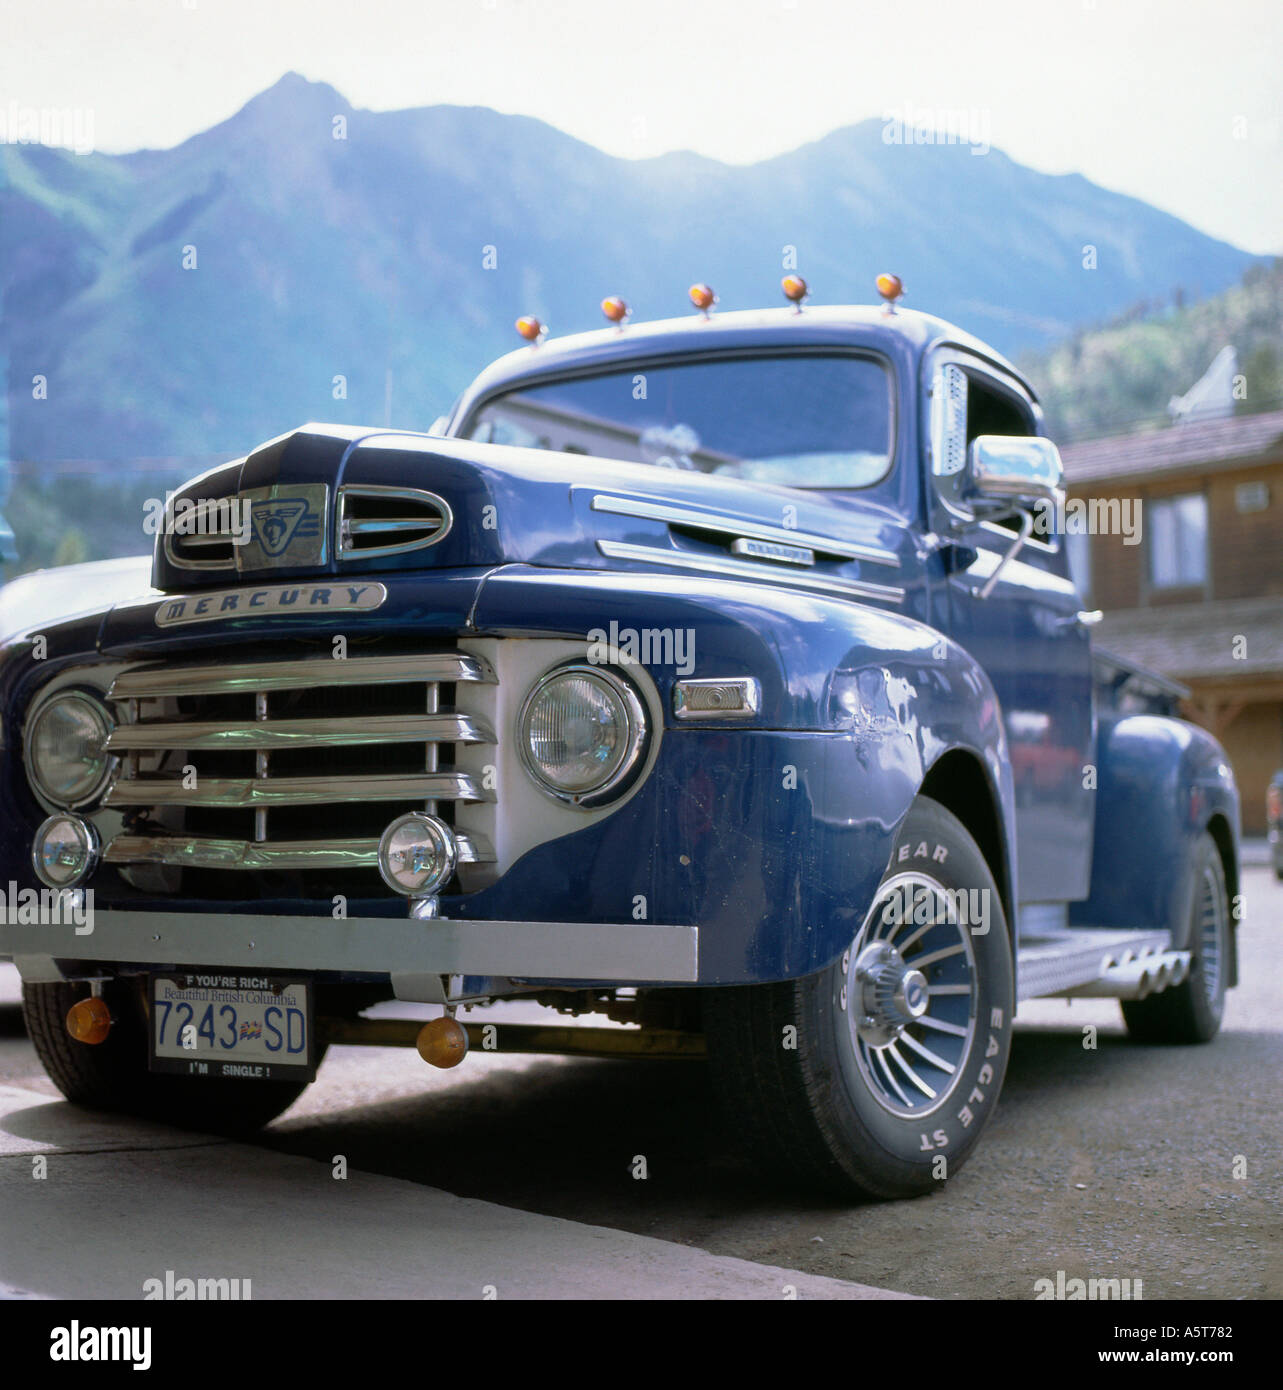 Pick-up Mercury des années 1950 garés dans main Street avec un Vue sur les montagnes Cascade à Lillooet Colombie-Britannique Canada KATHY DEWITT Banque D'Images